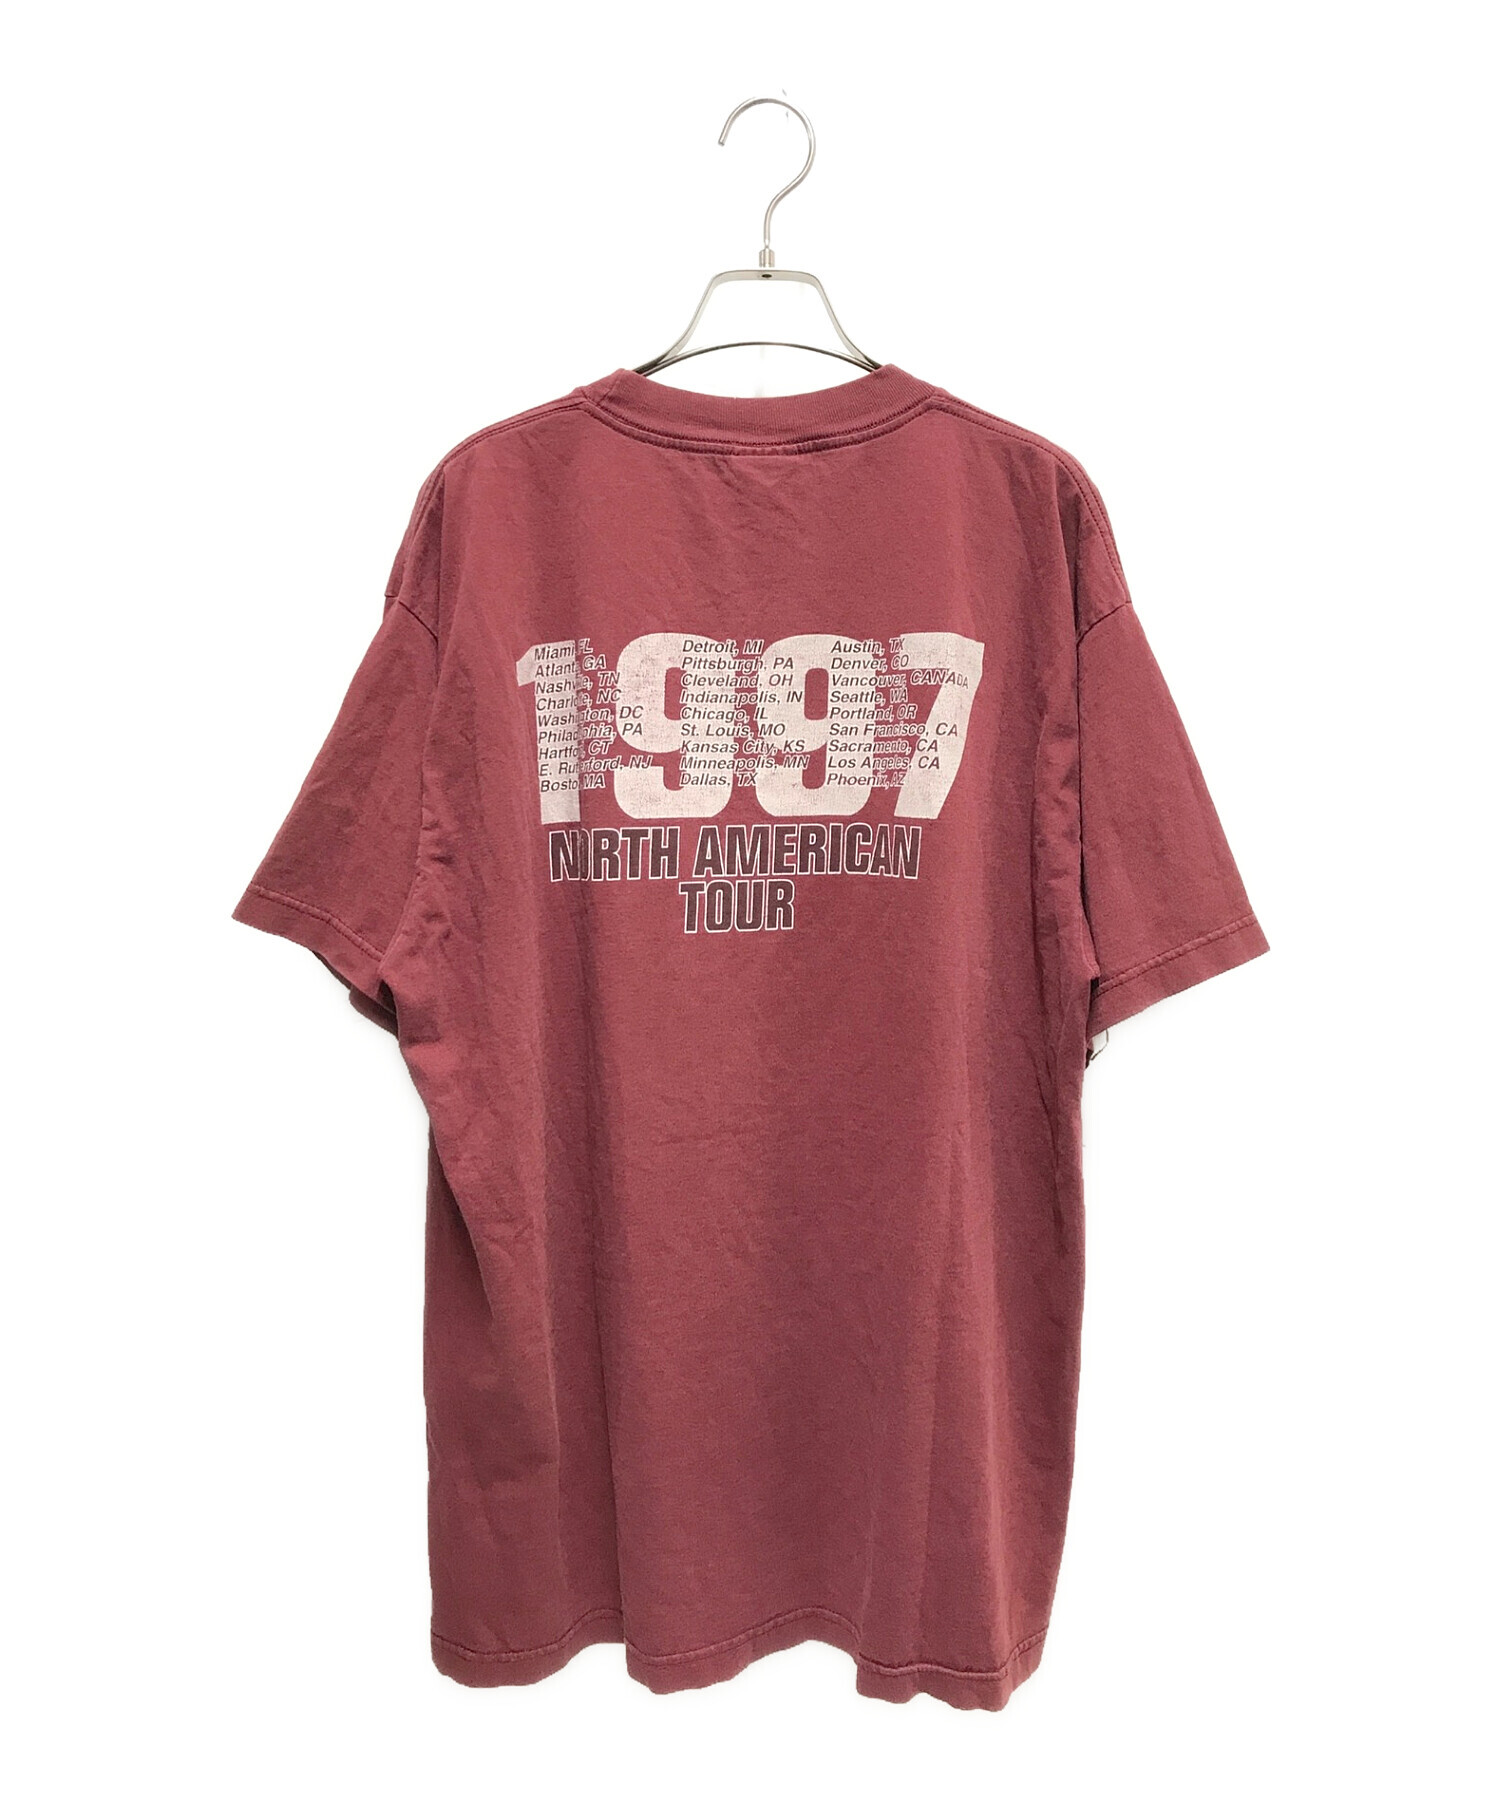 1996年製 レイジアゲインストザマシーン ヴィンテージ Tシャツ rageサウンドガーデン